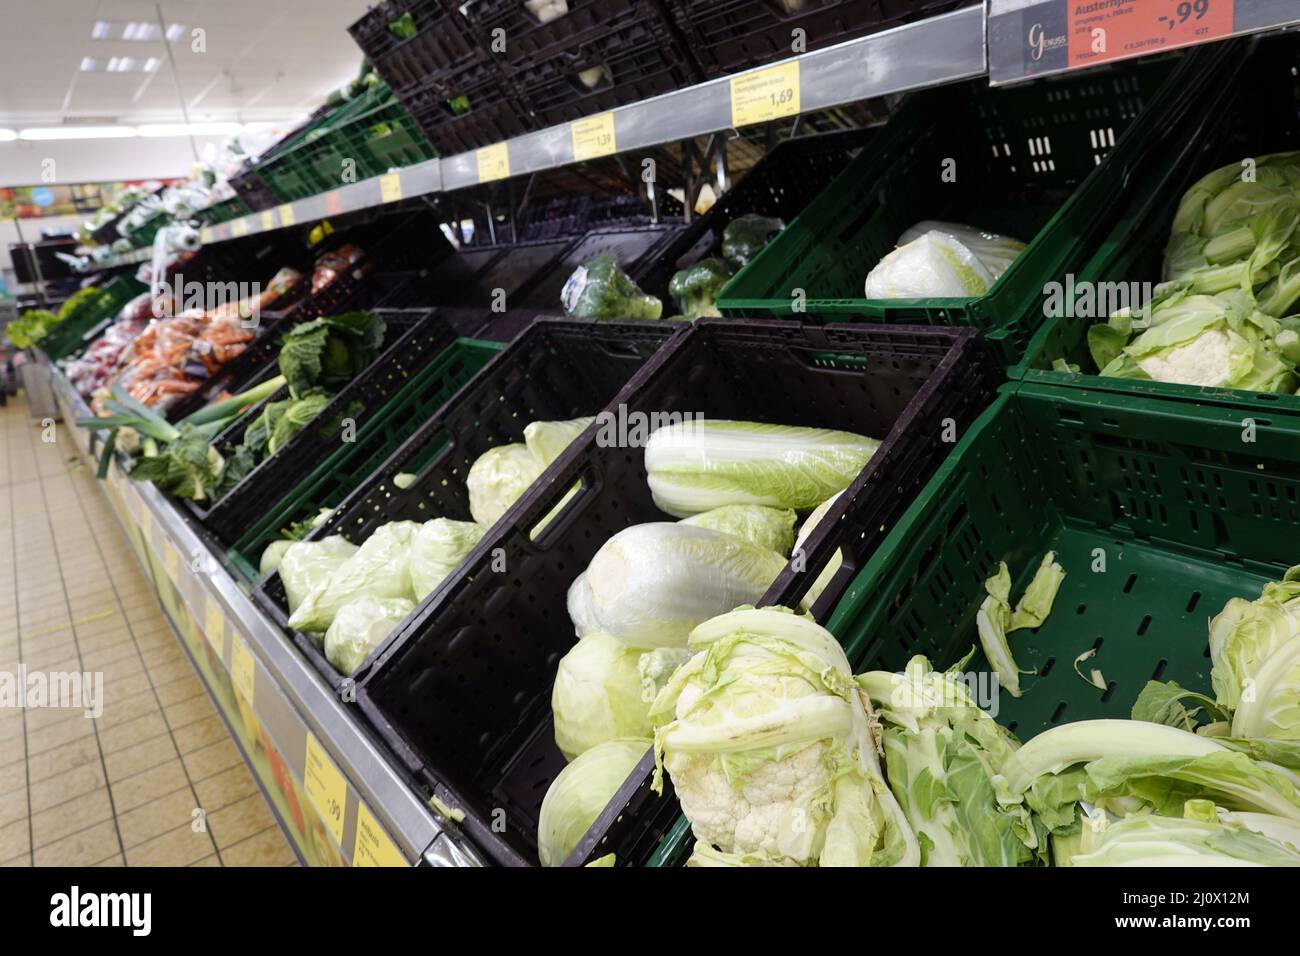 Comptoir de fruits et légumes dans un magasin à prix réduit avec beaucoup de plastique comme matériau d'emballage Banque D'Images